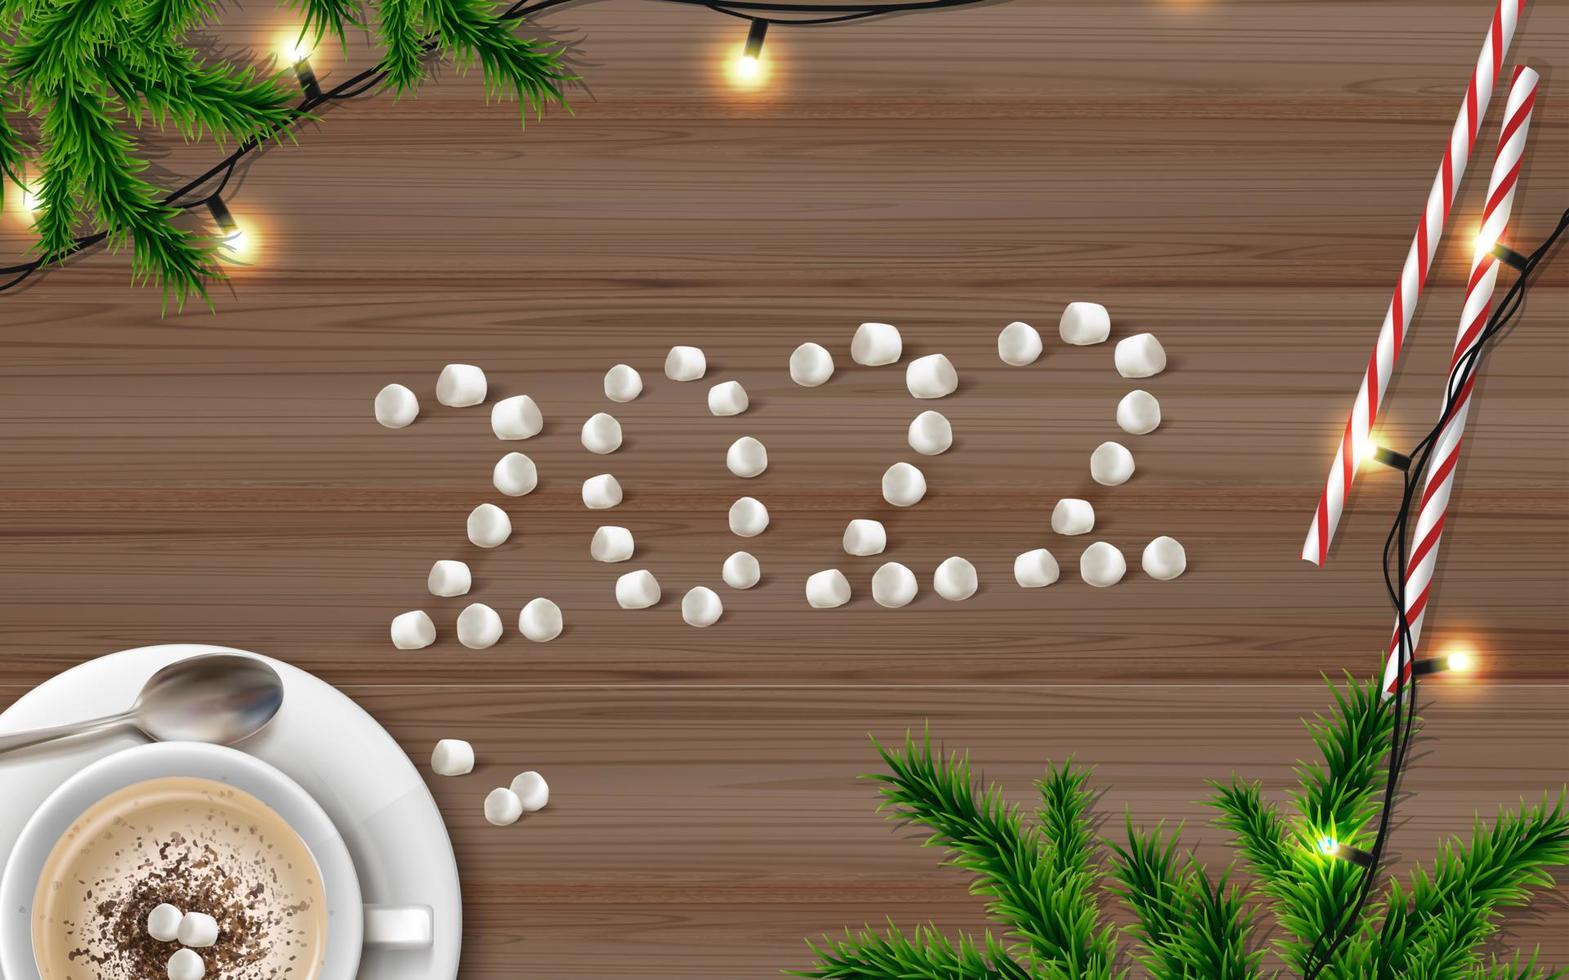 banner vectorial realista. fondo de navidad y año nuevo. escritorio de madera decorado con luces, taza con chocolate caliente y abeto tres. vector